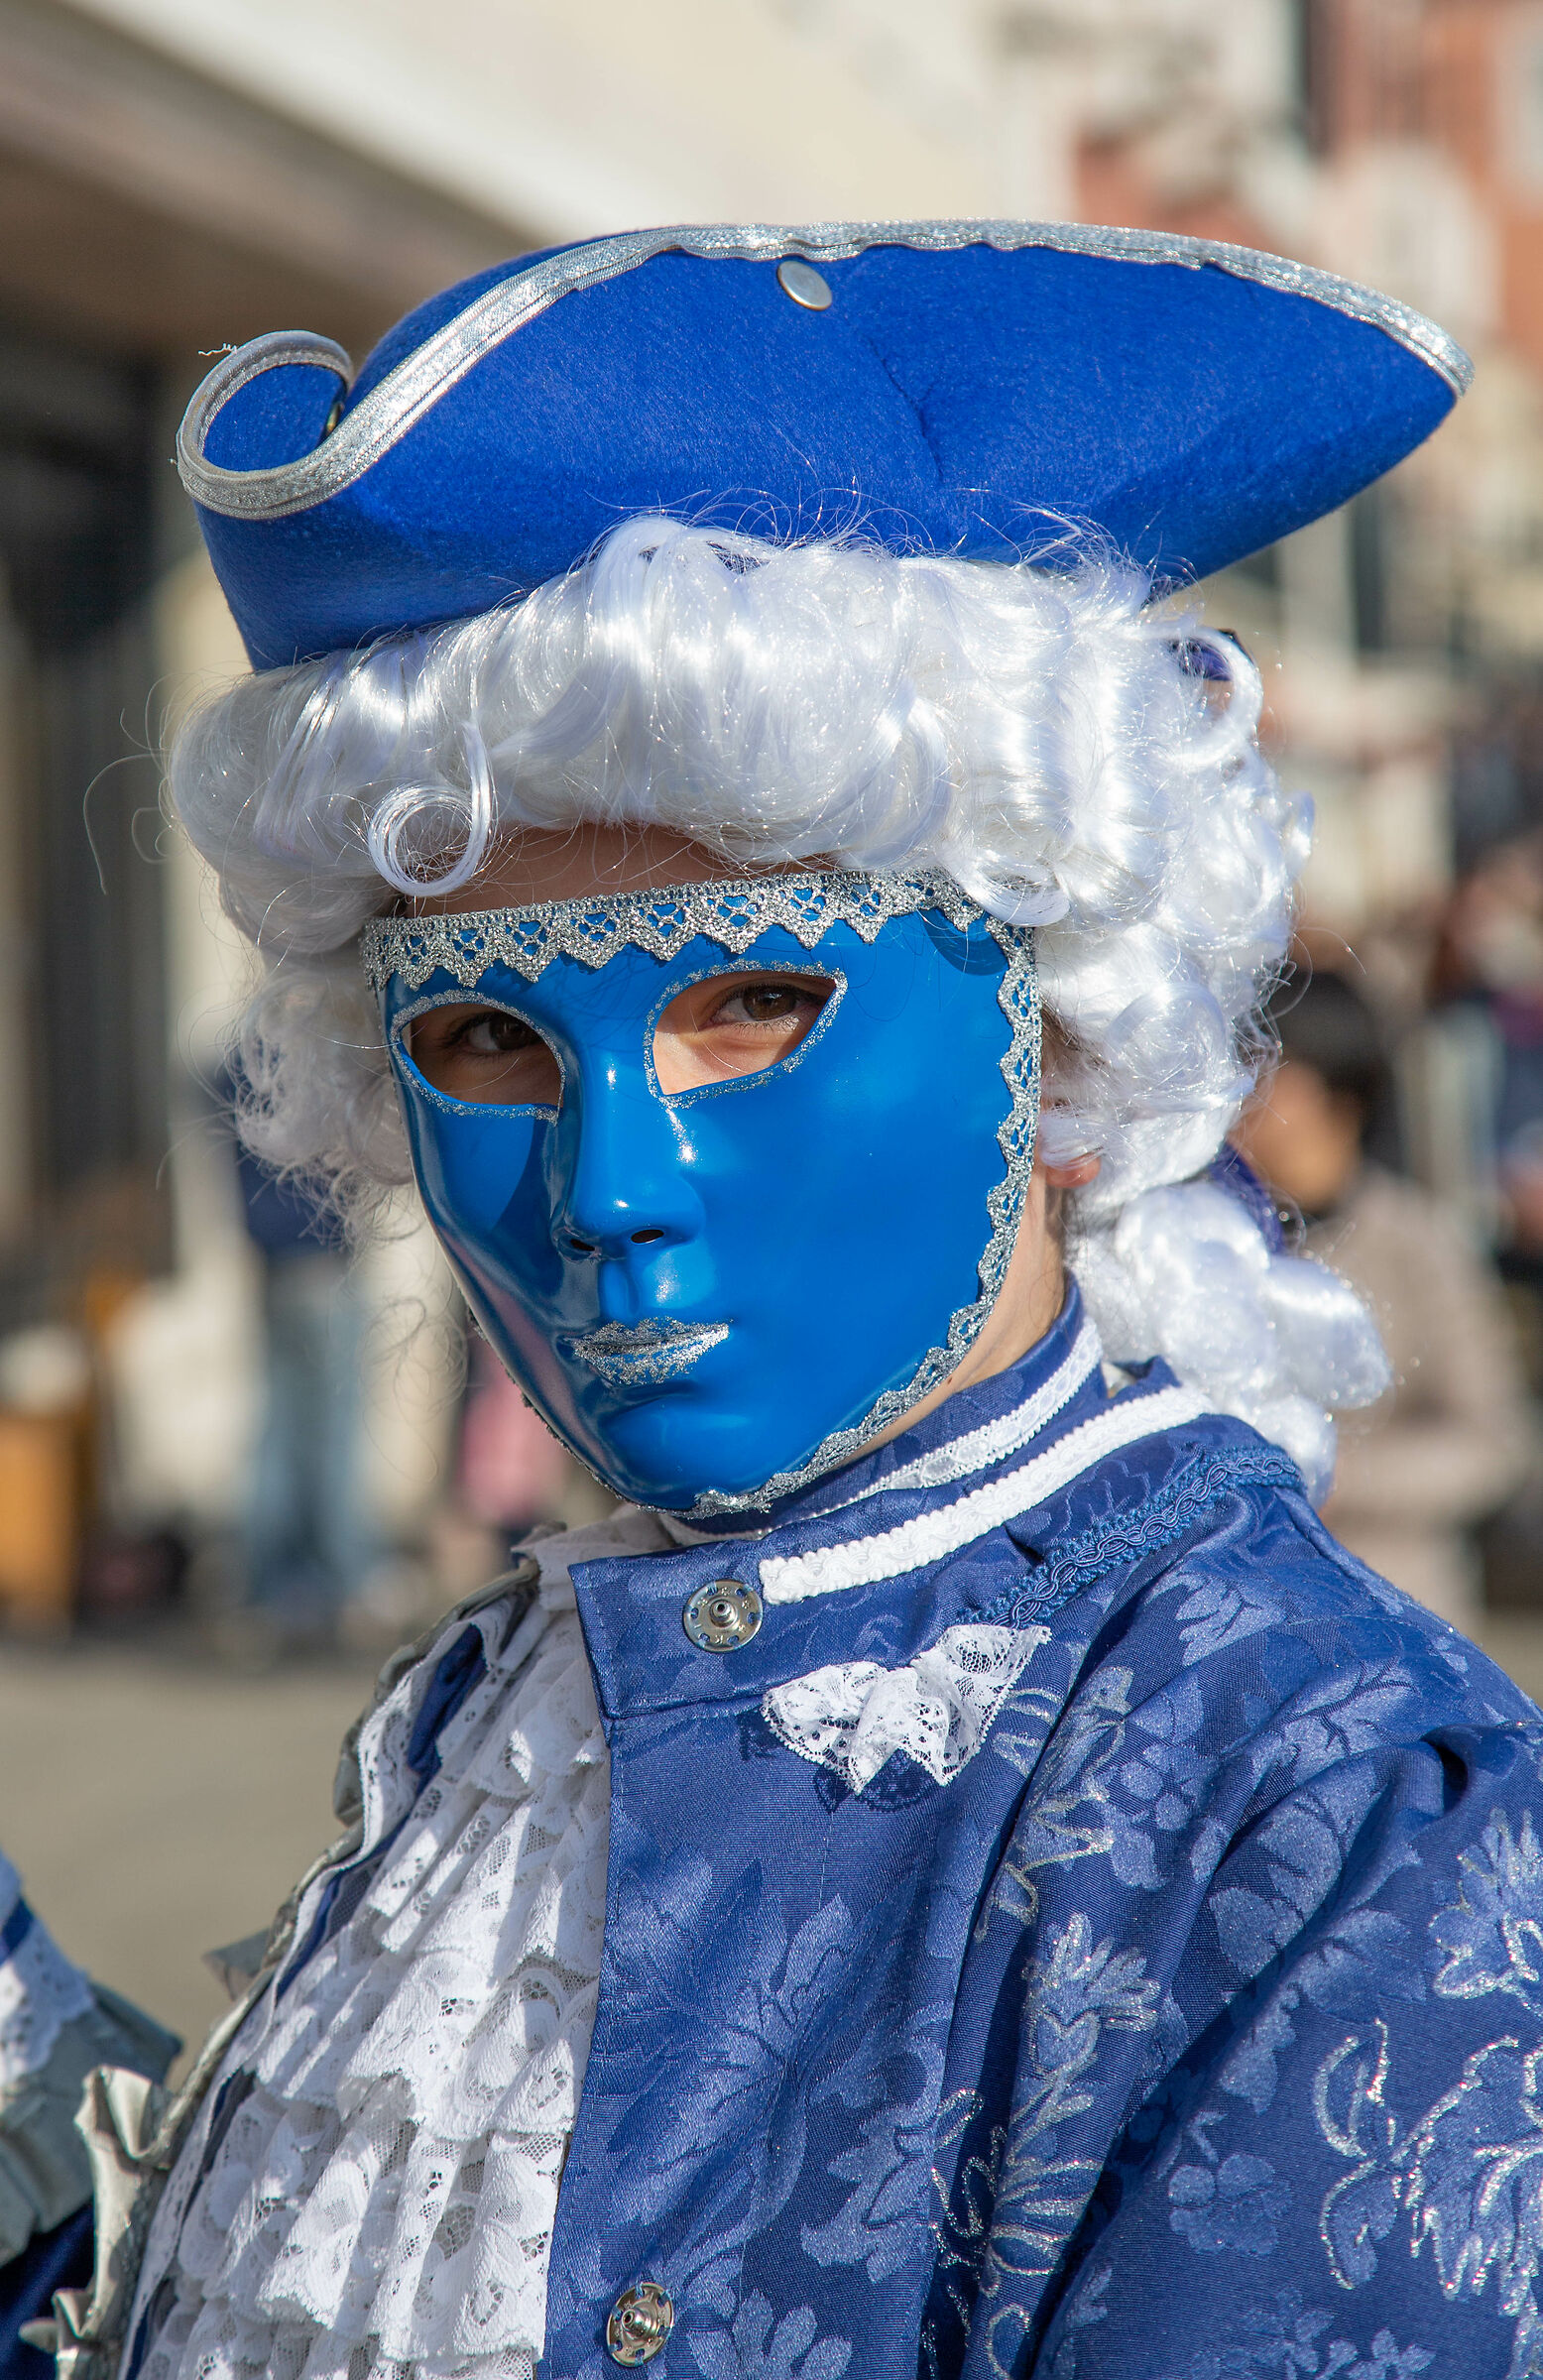 Venezia Maschere di Carnevale...